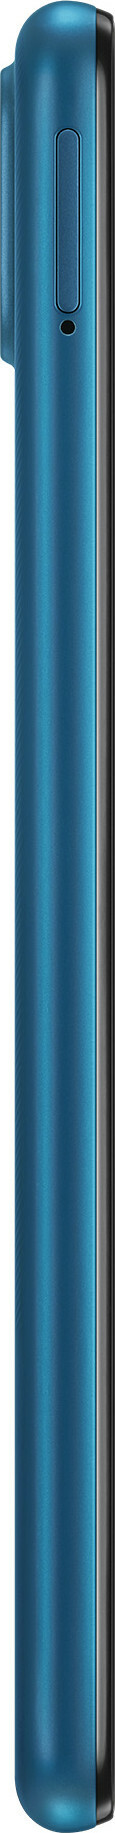 Samsung Galaxy A12s (Nacho) 32GB